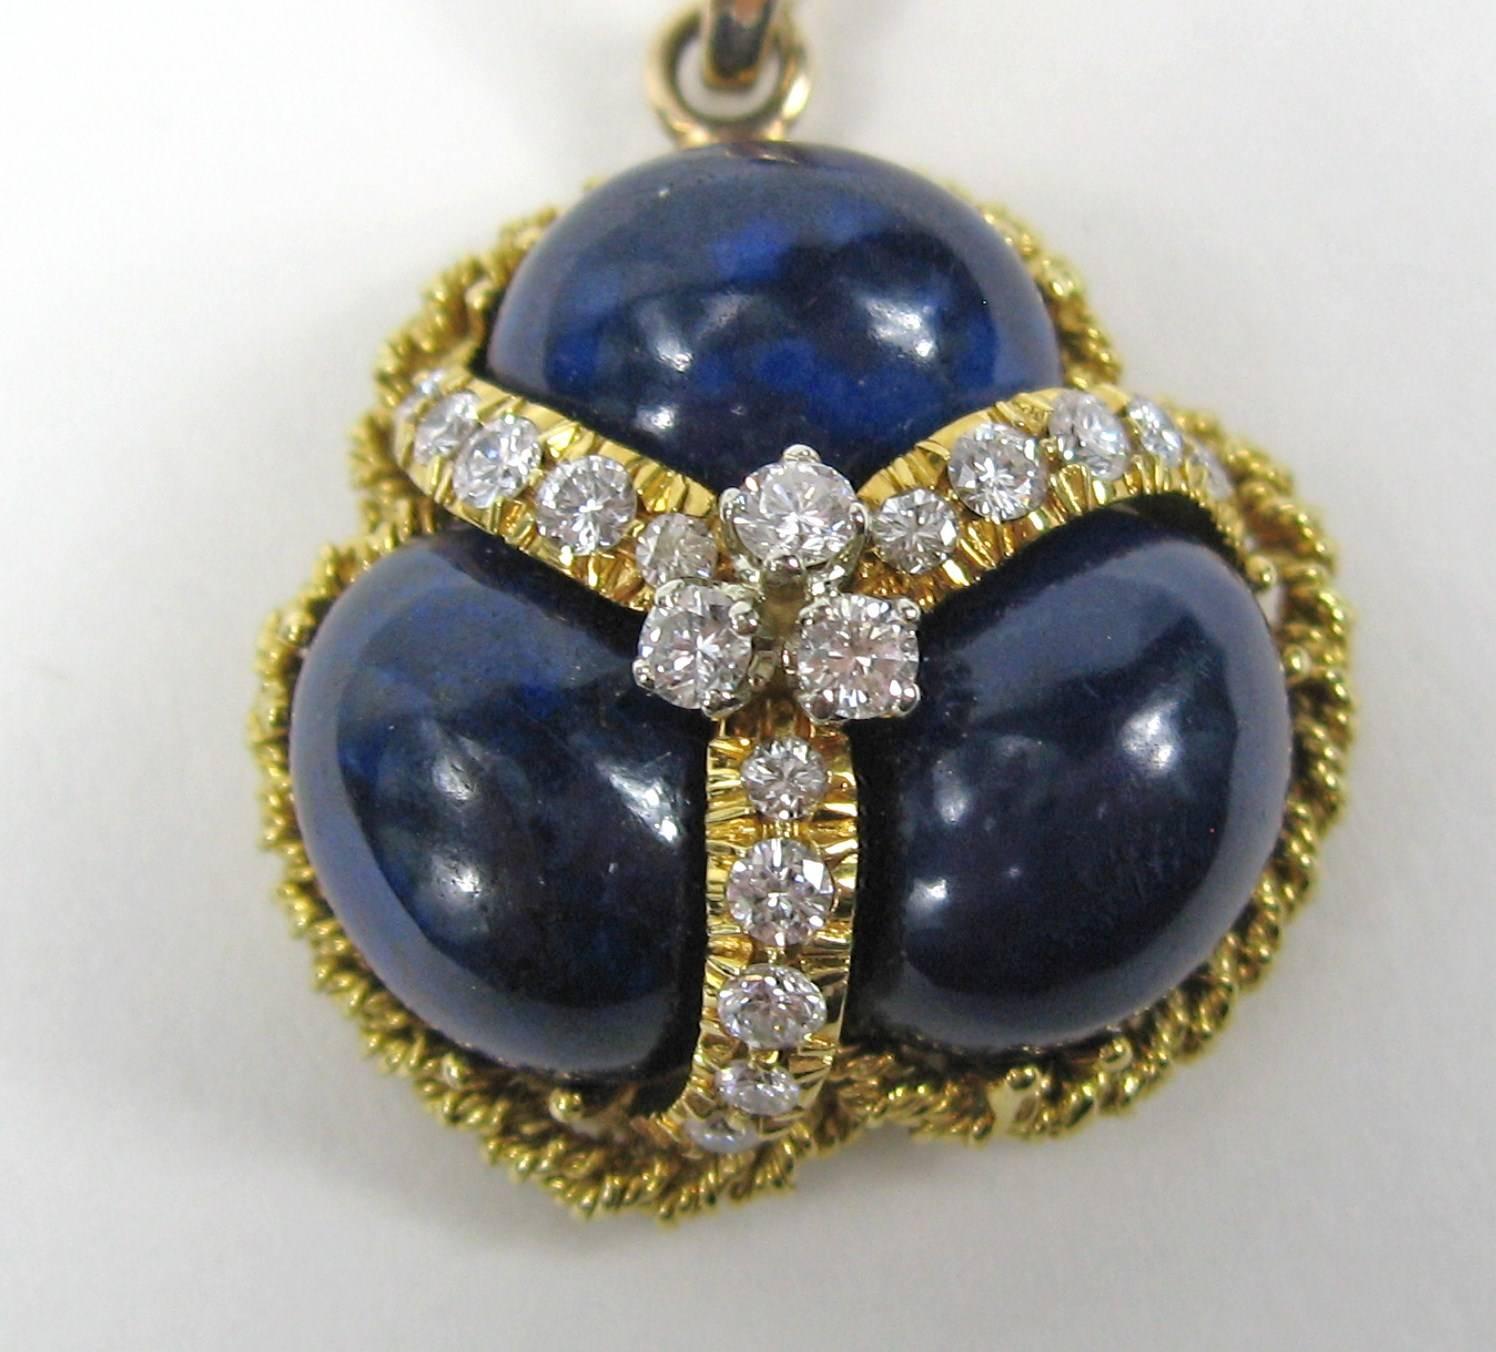 14K Gold Lapis Lazuli Anhänger mit 1 Karat Diamanten im Brillantschliff, die die 3 Lapisstücke umgeben. Die Kette ist eine Kombination aus Seil und Glied, sehr ungewöhnlich - 0,86 cm von oben nach unten (ohne Ballen) und 0,91 cm breit. Die Kette ist